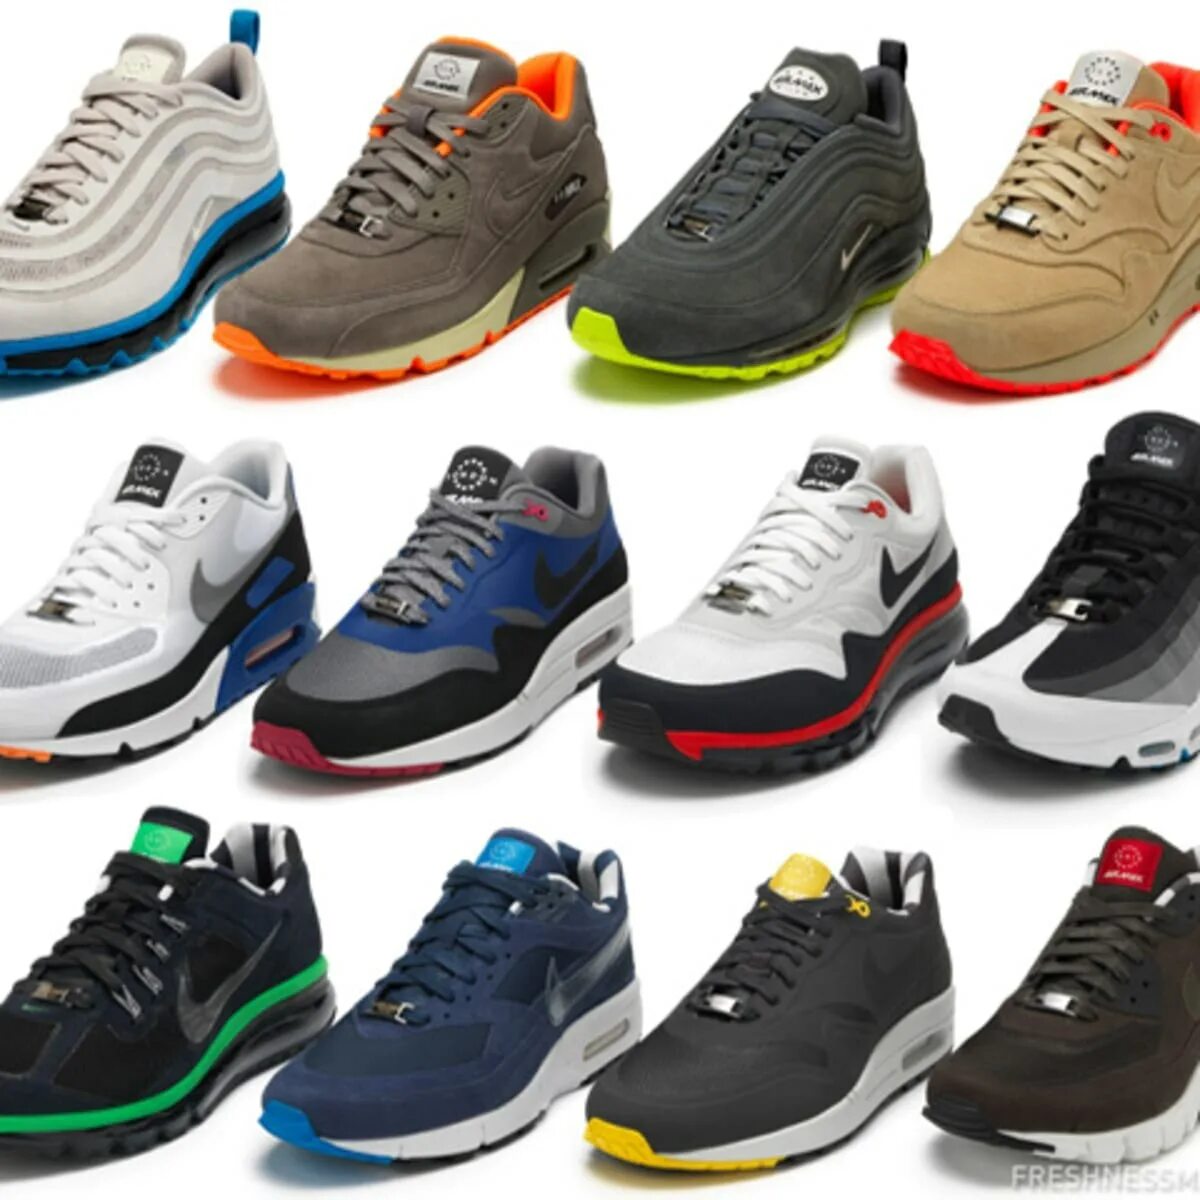 Новая модель обуви. Обувь и красофка мужское 2022. Nike Air Max коллекция 2022г. Обувь мужская найк Эйр. Кроссовки мужские фашион Air.